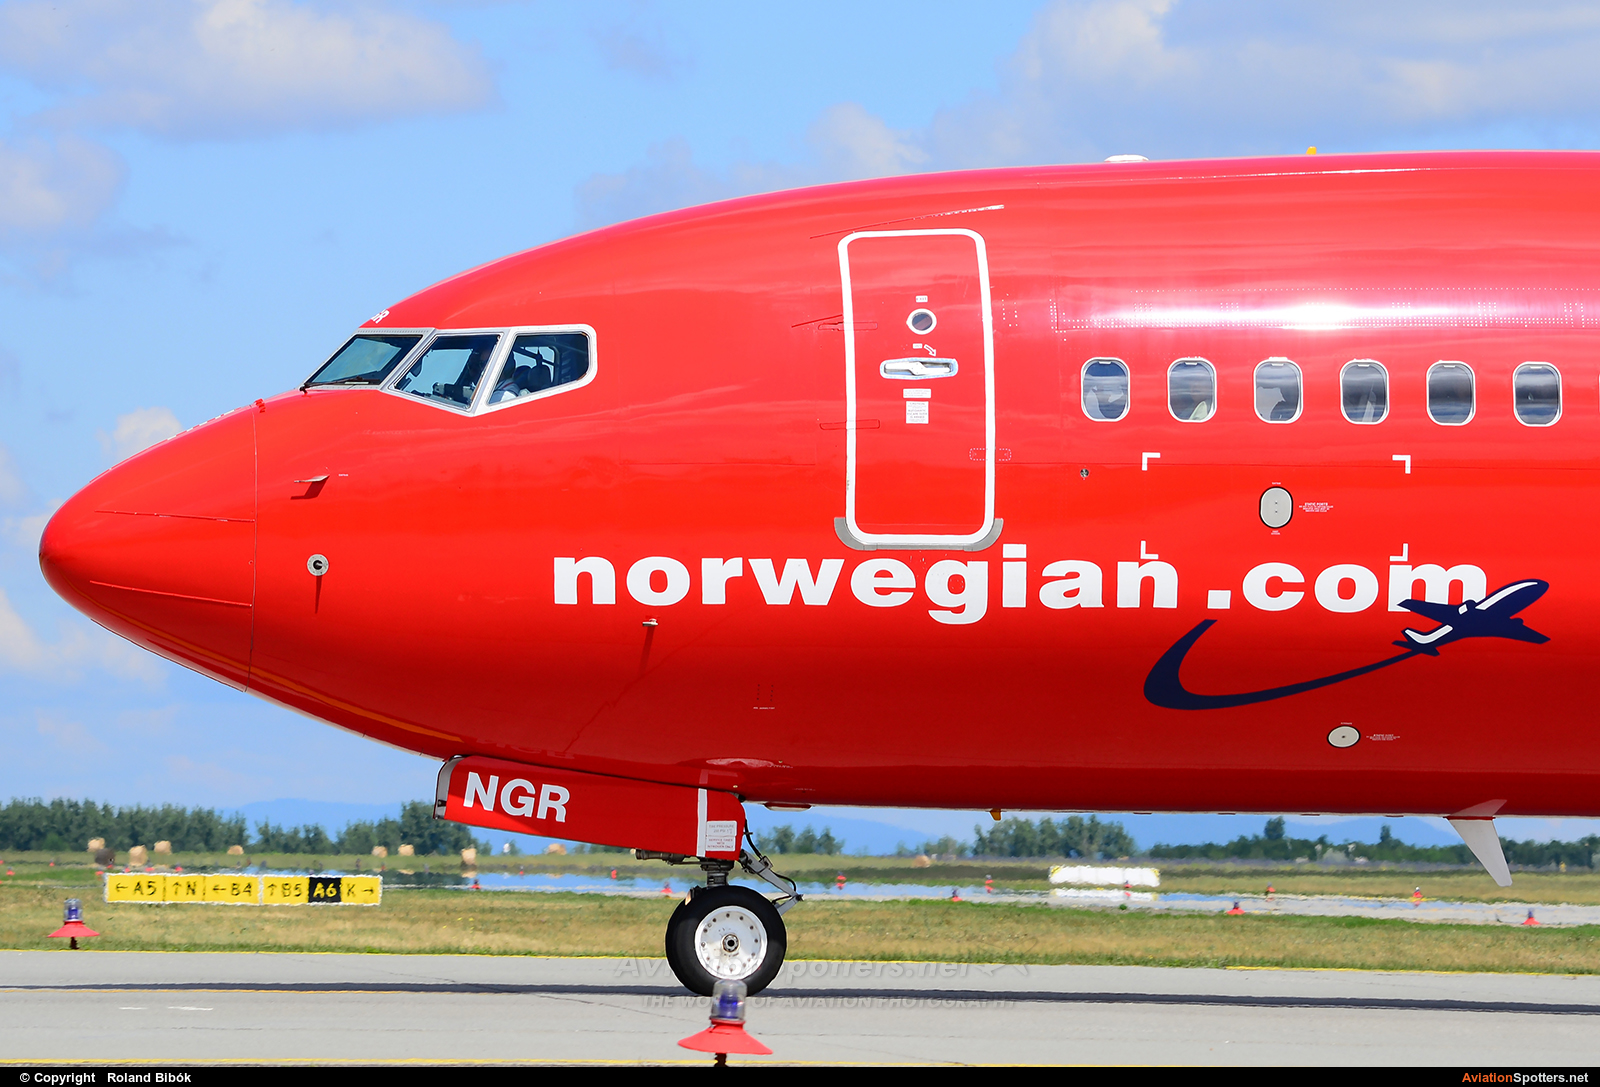 Norwegian Air Shuttle  -  737-800  (LN-NGR) By Roland Bibók (Roland Bibok)